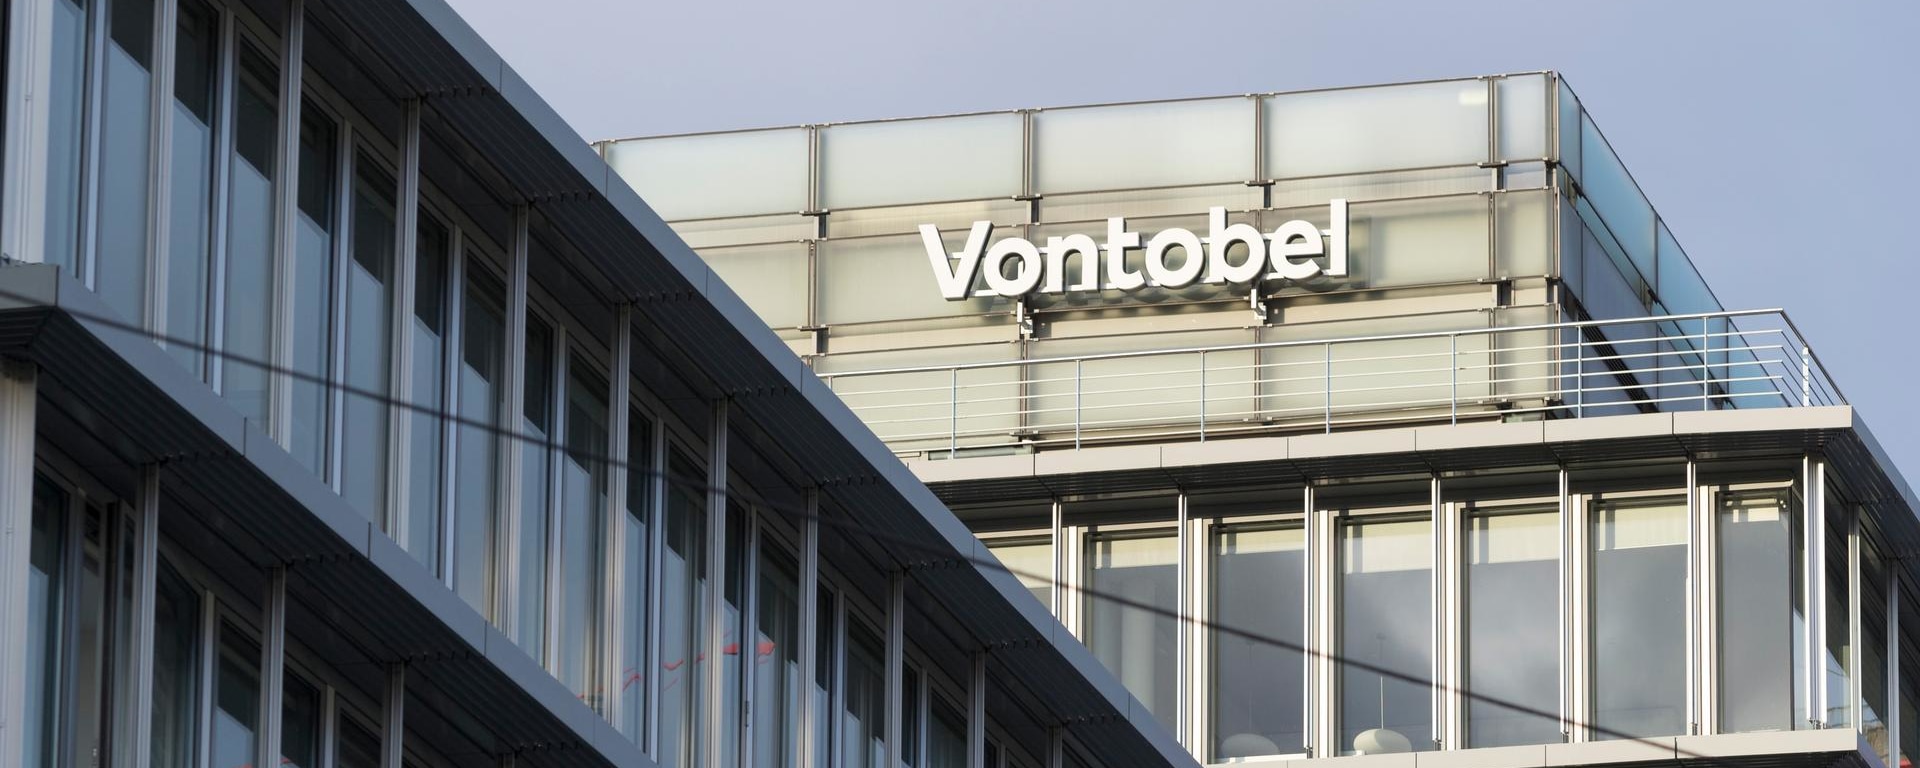 Der Hauptsitz der Bank Vontobel in Zürich, Schweiz, von aussen fotografiert.